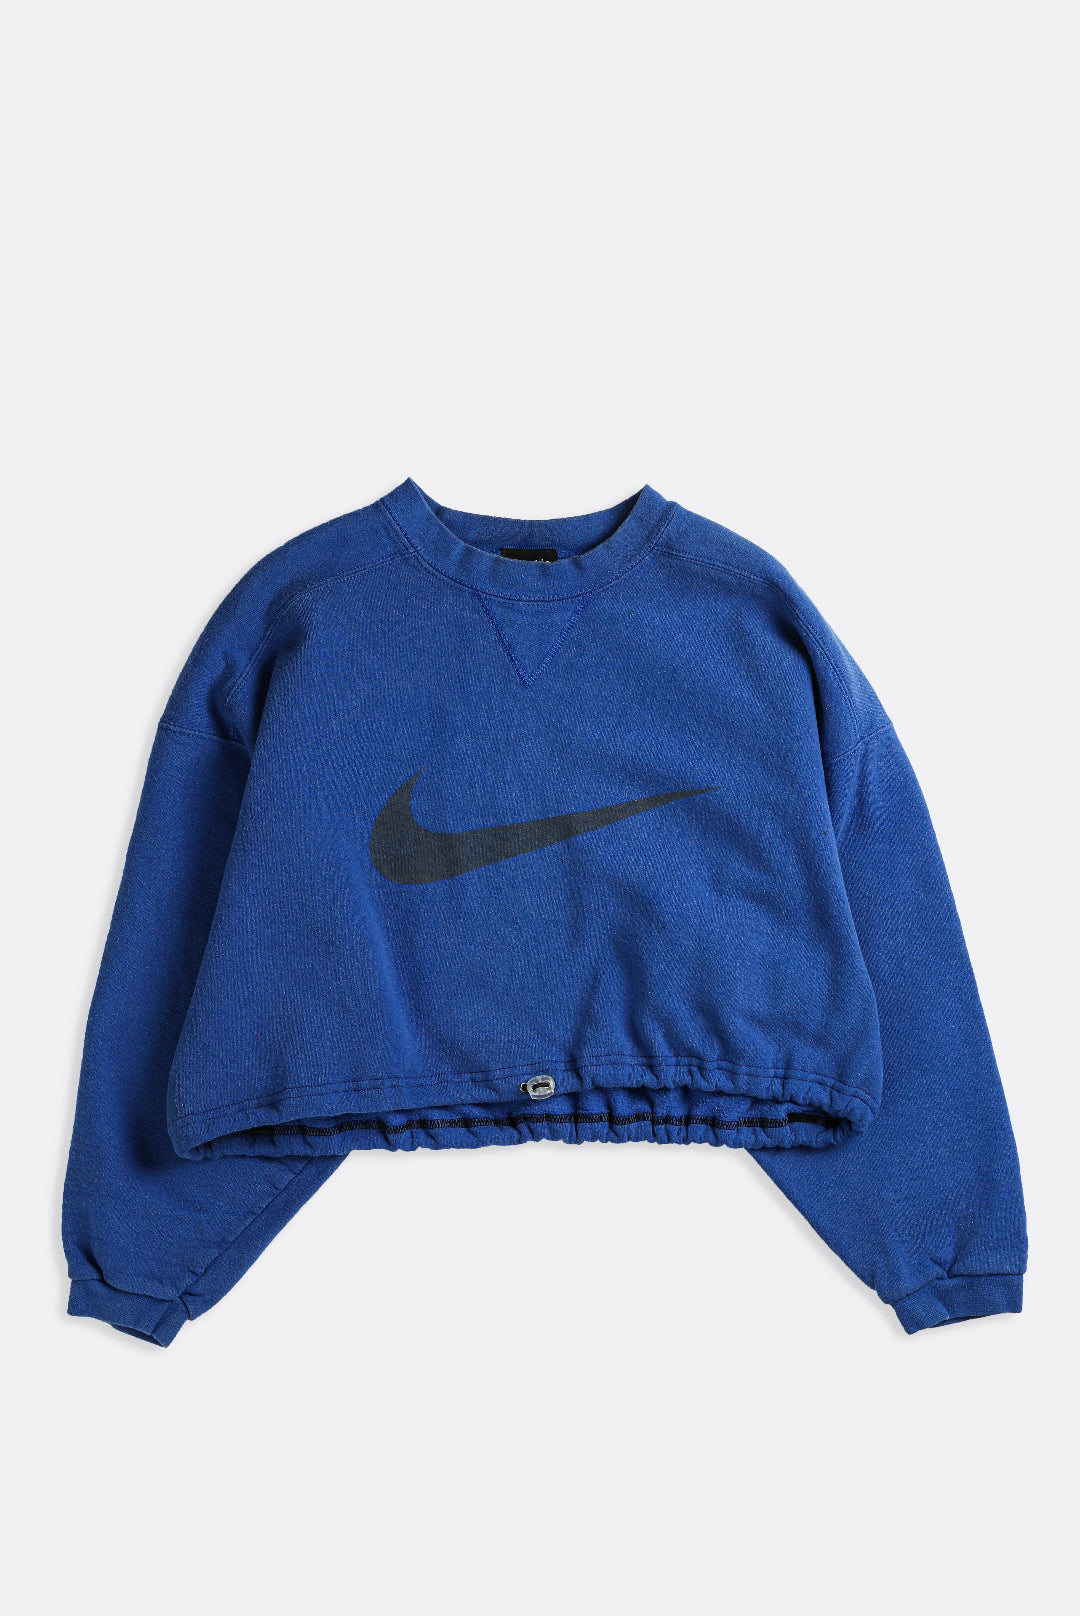 Lover og forskrifter fly dramatisk Rework Nike Crop Sweatshirt - XL – Frankie Collective